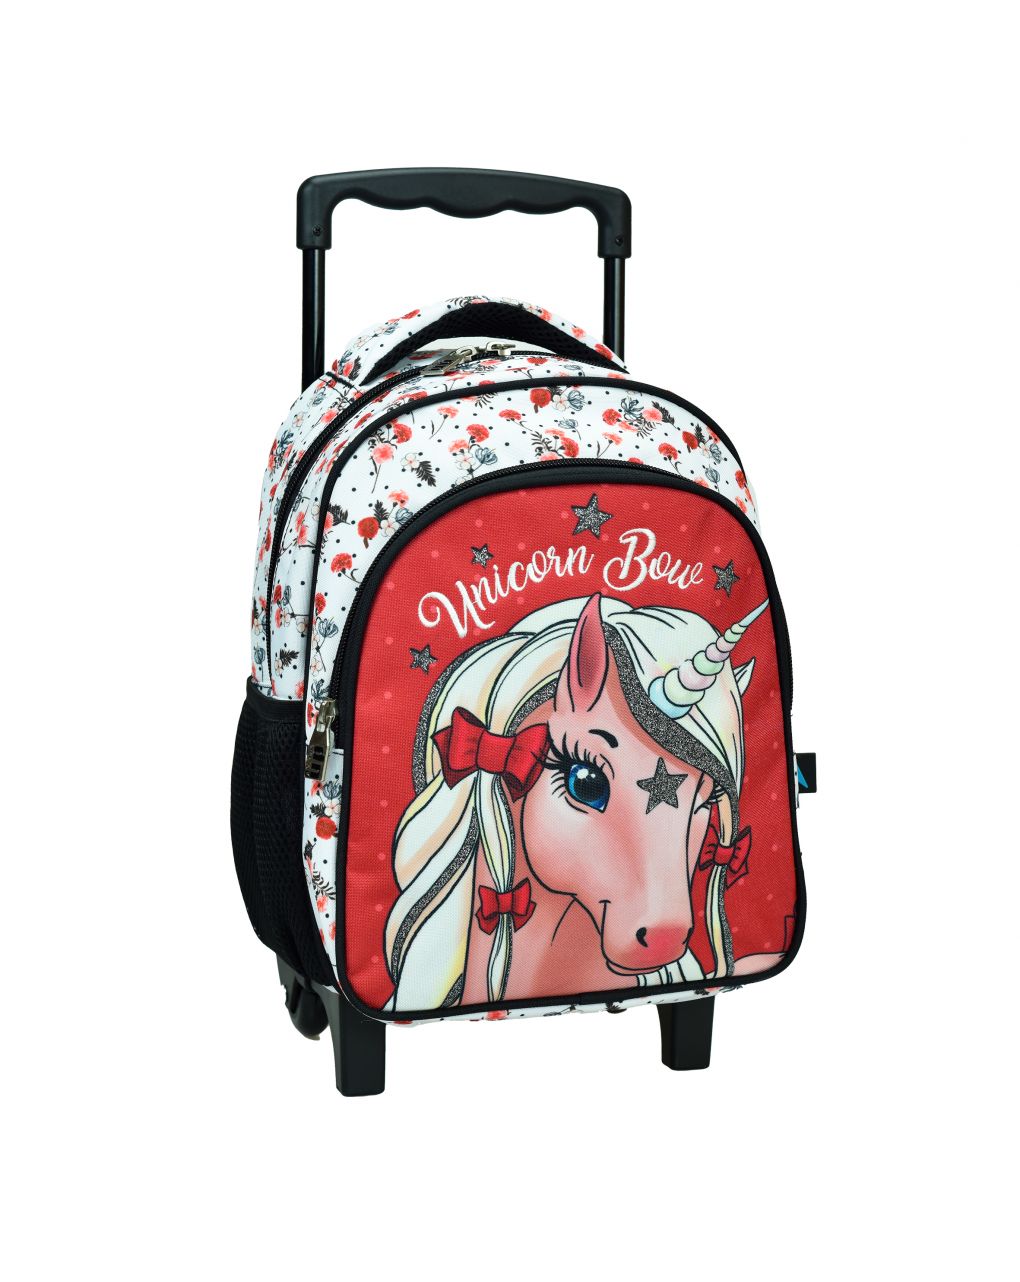 Bmu τσάντα νηπιαγωγείου trolley unicorn bow 357-14072 - BMU